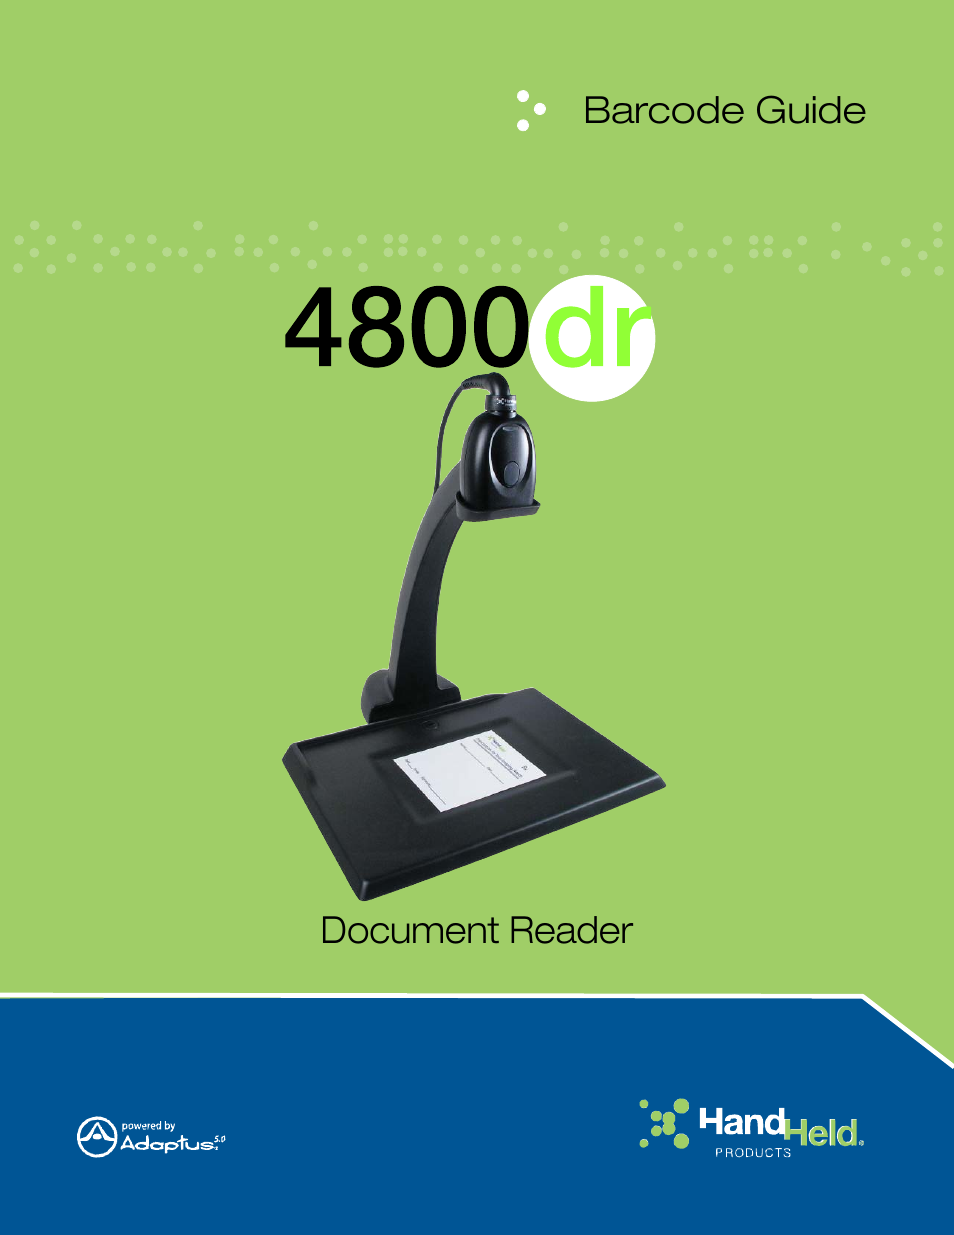 Document Reader 4800dr